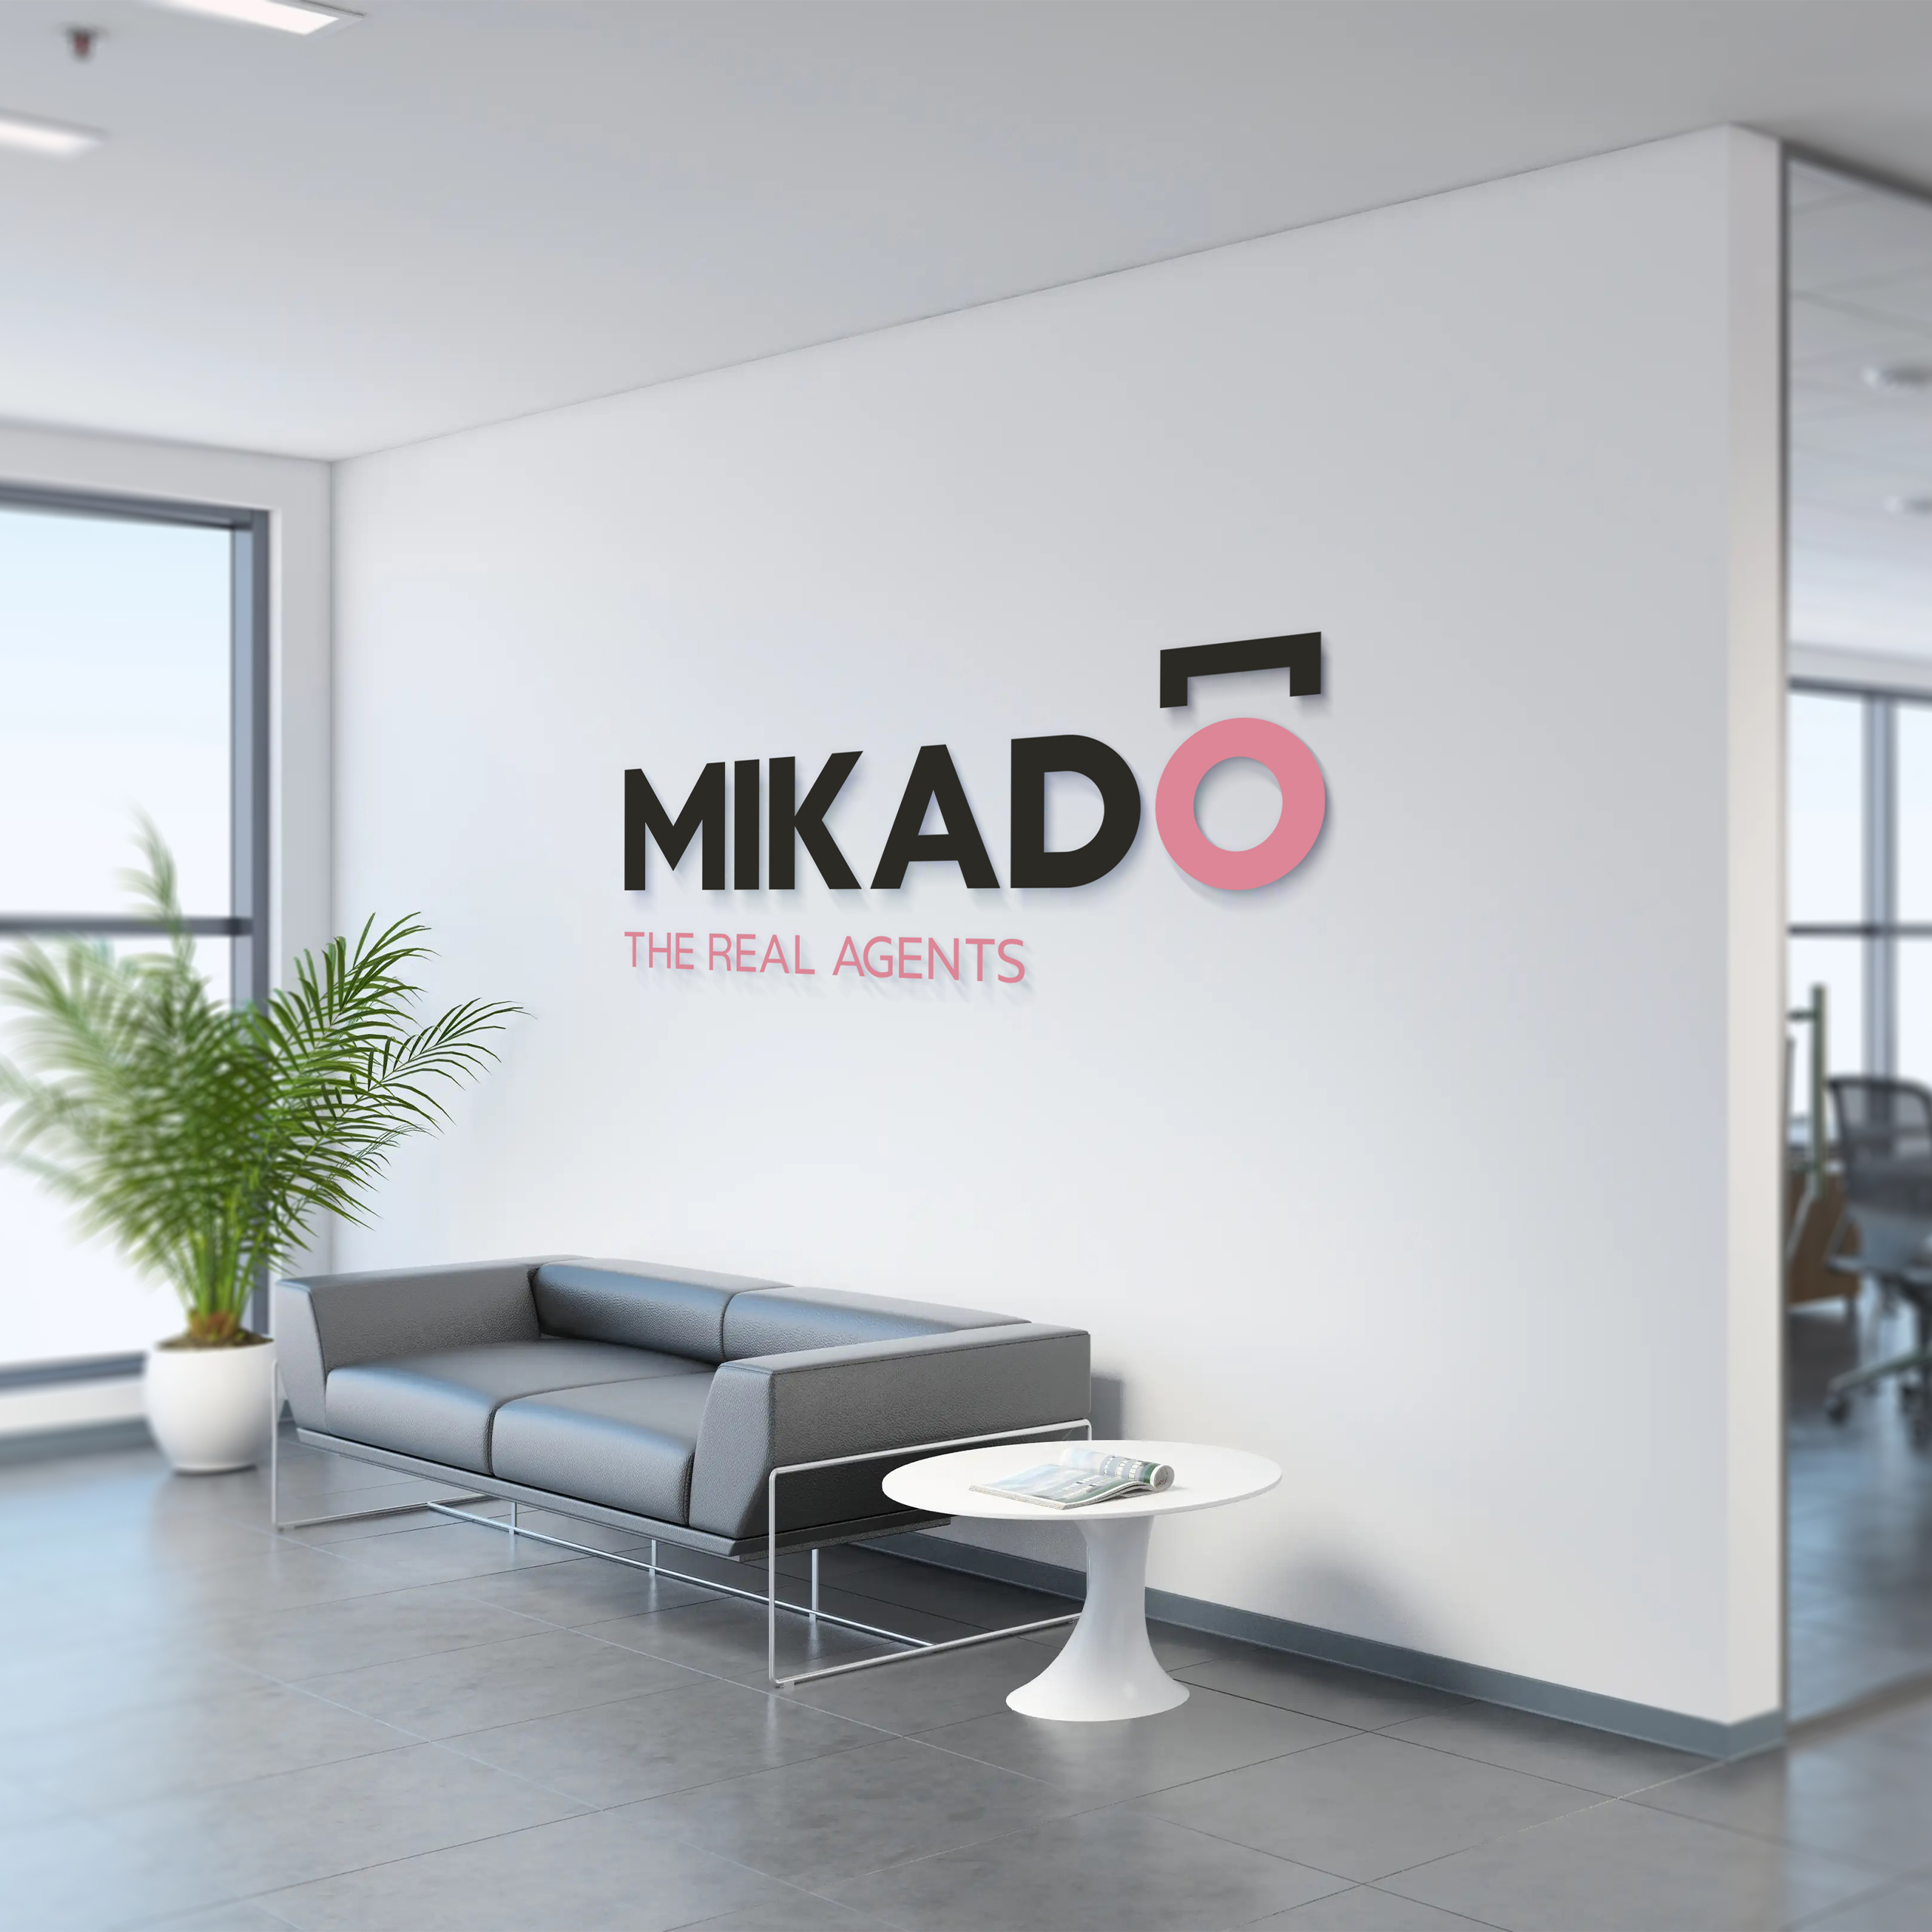 mikado wall signage